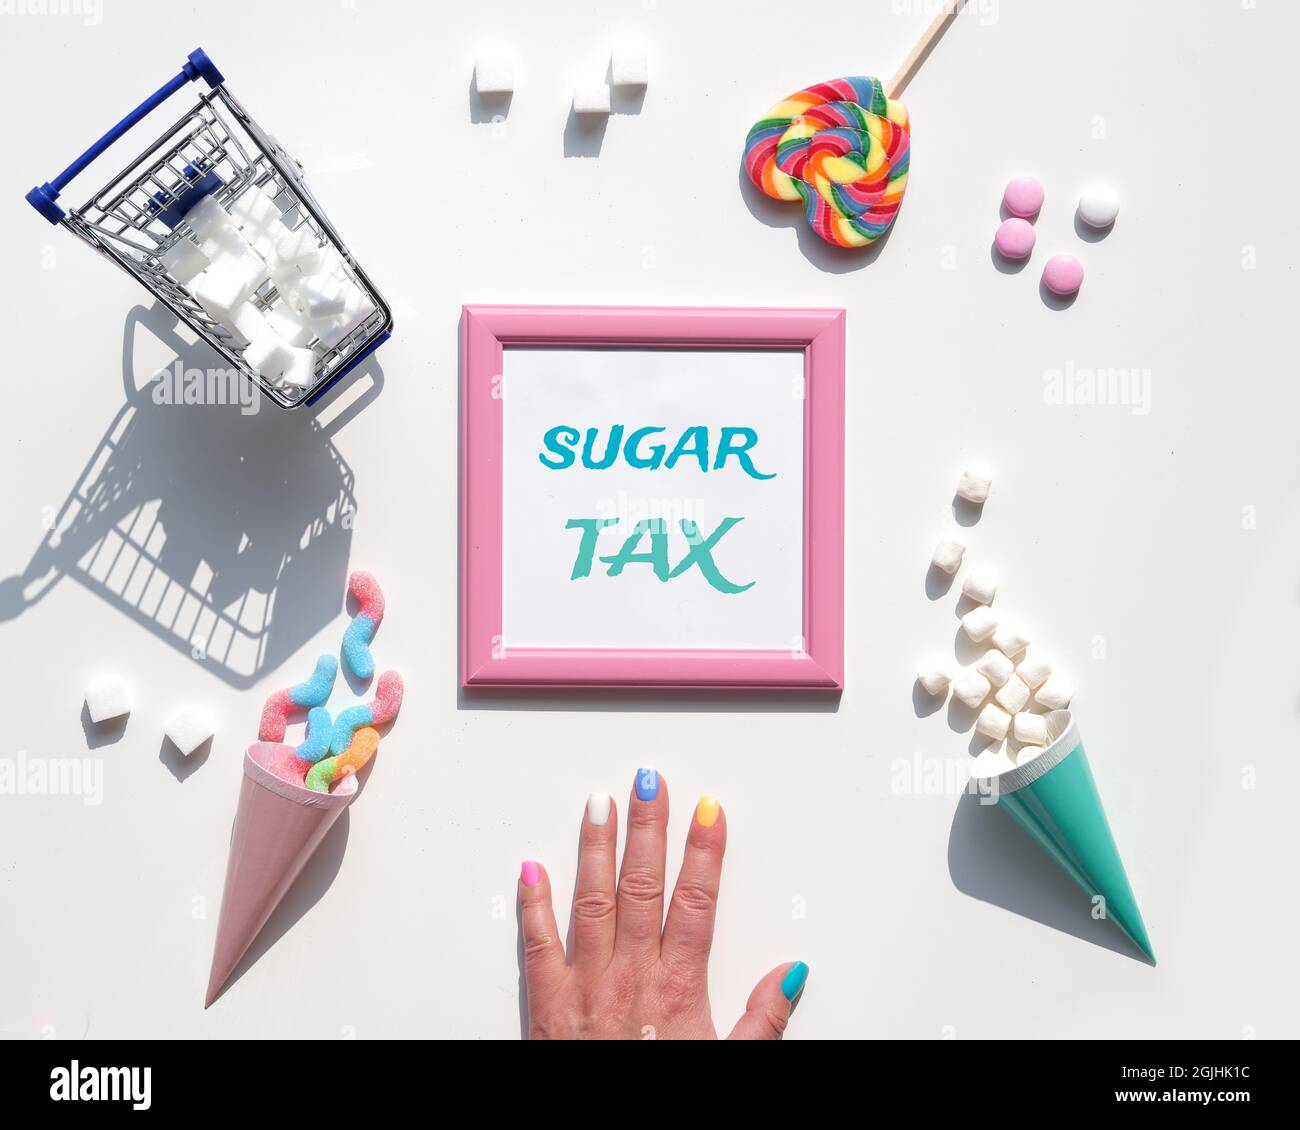 Texte sur Sugar Tax. Vari snack gustosi in colori pastello, rosa, verde menta, su sfondo bianco. Eccesso di dolci, cioccolato, caramelle, dolci. Concetto Foto Stock